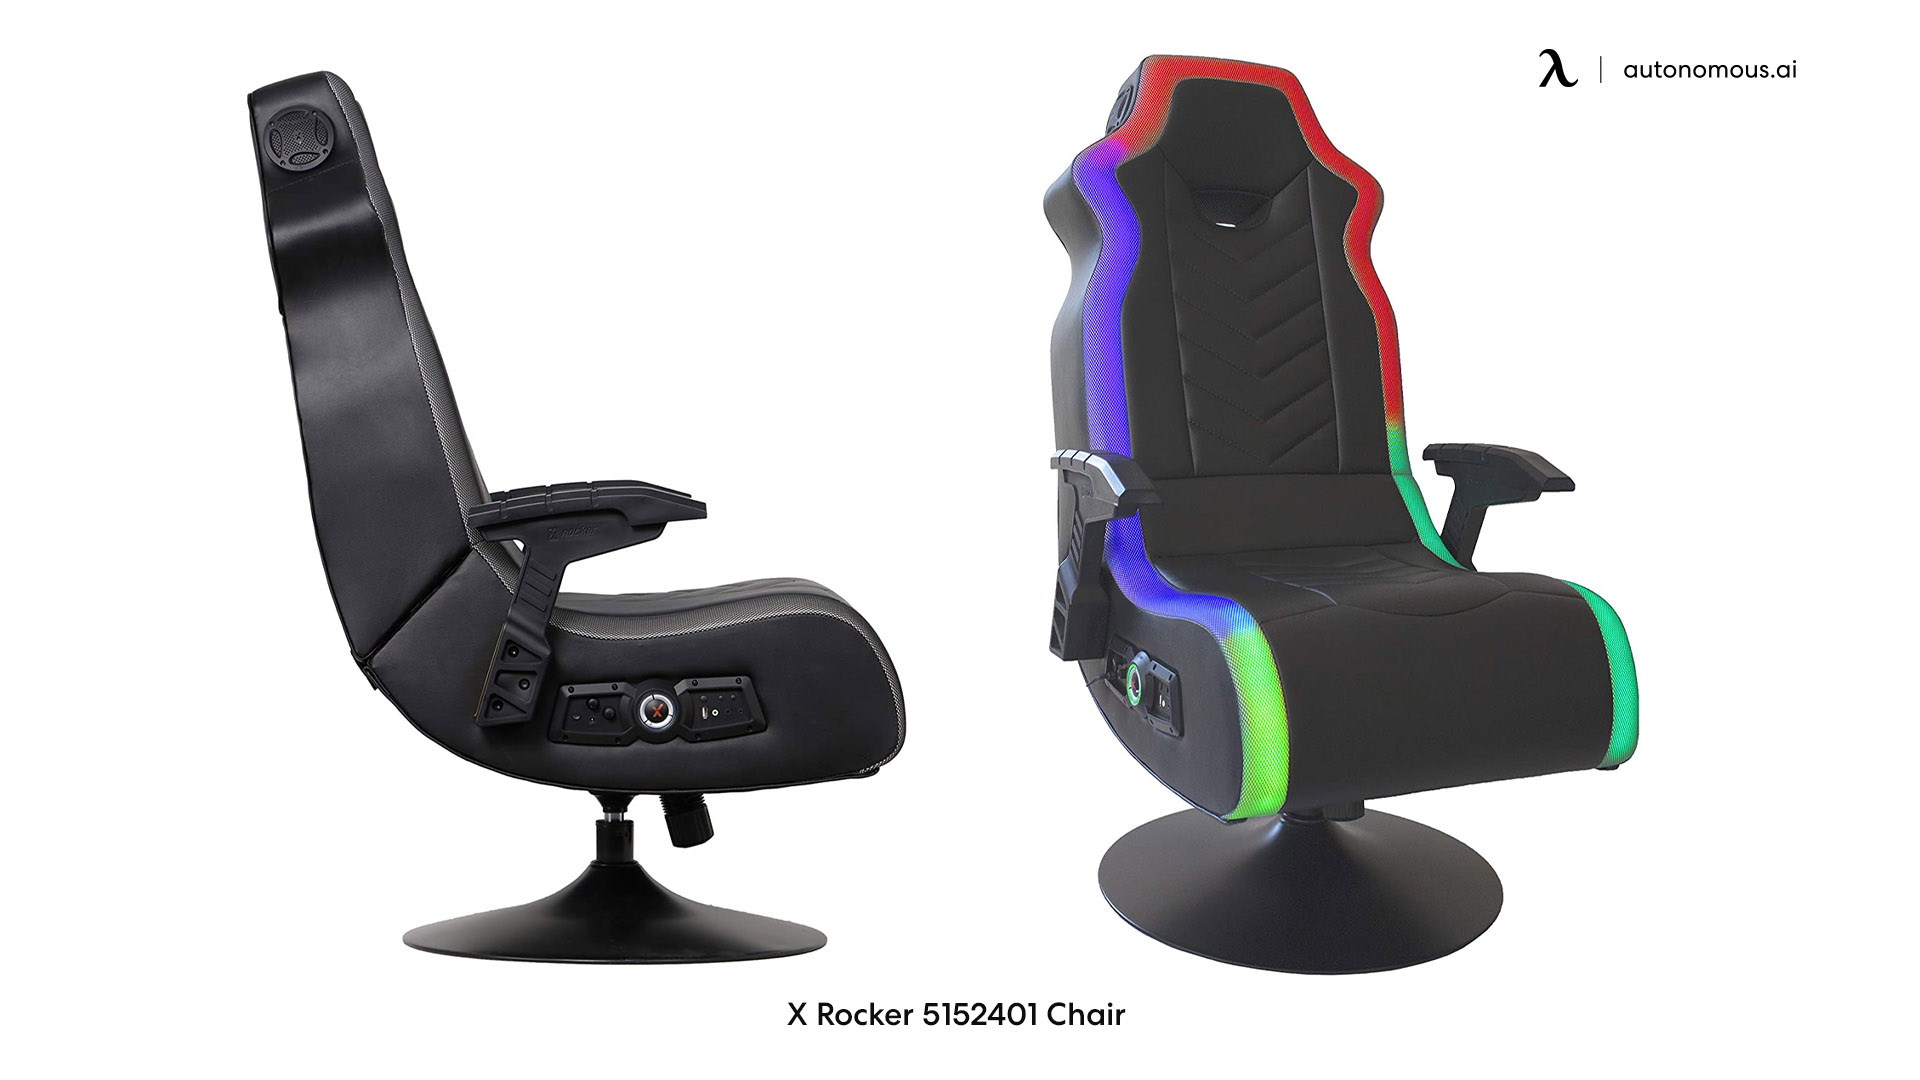 X Rocker 5152401 led gaming chair